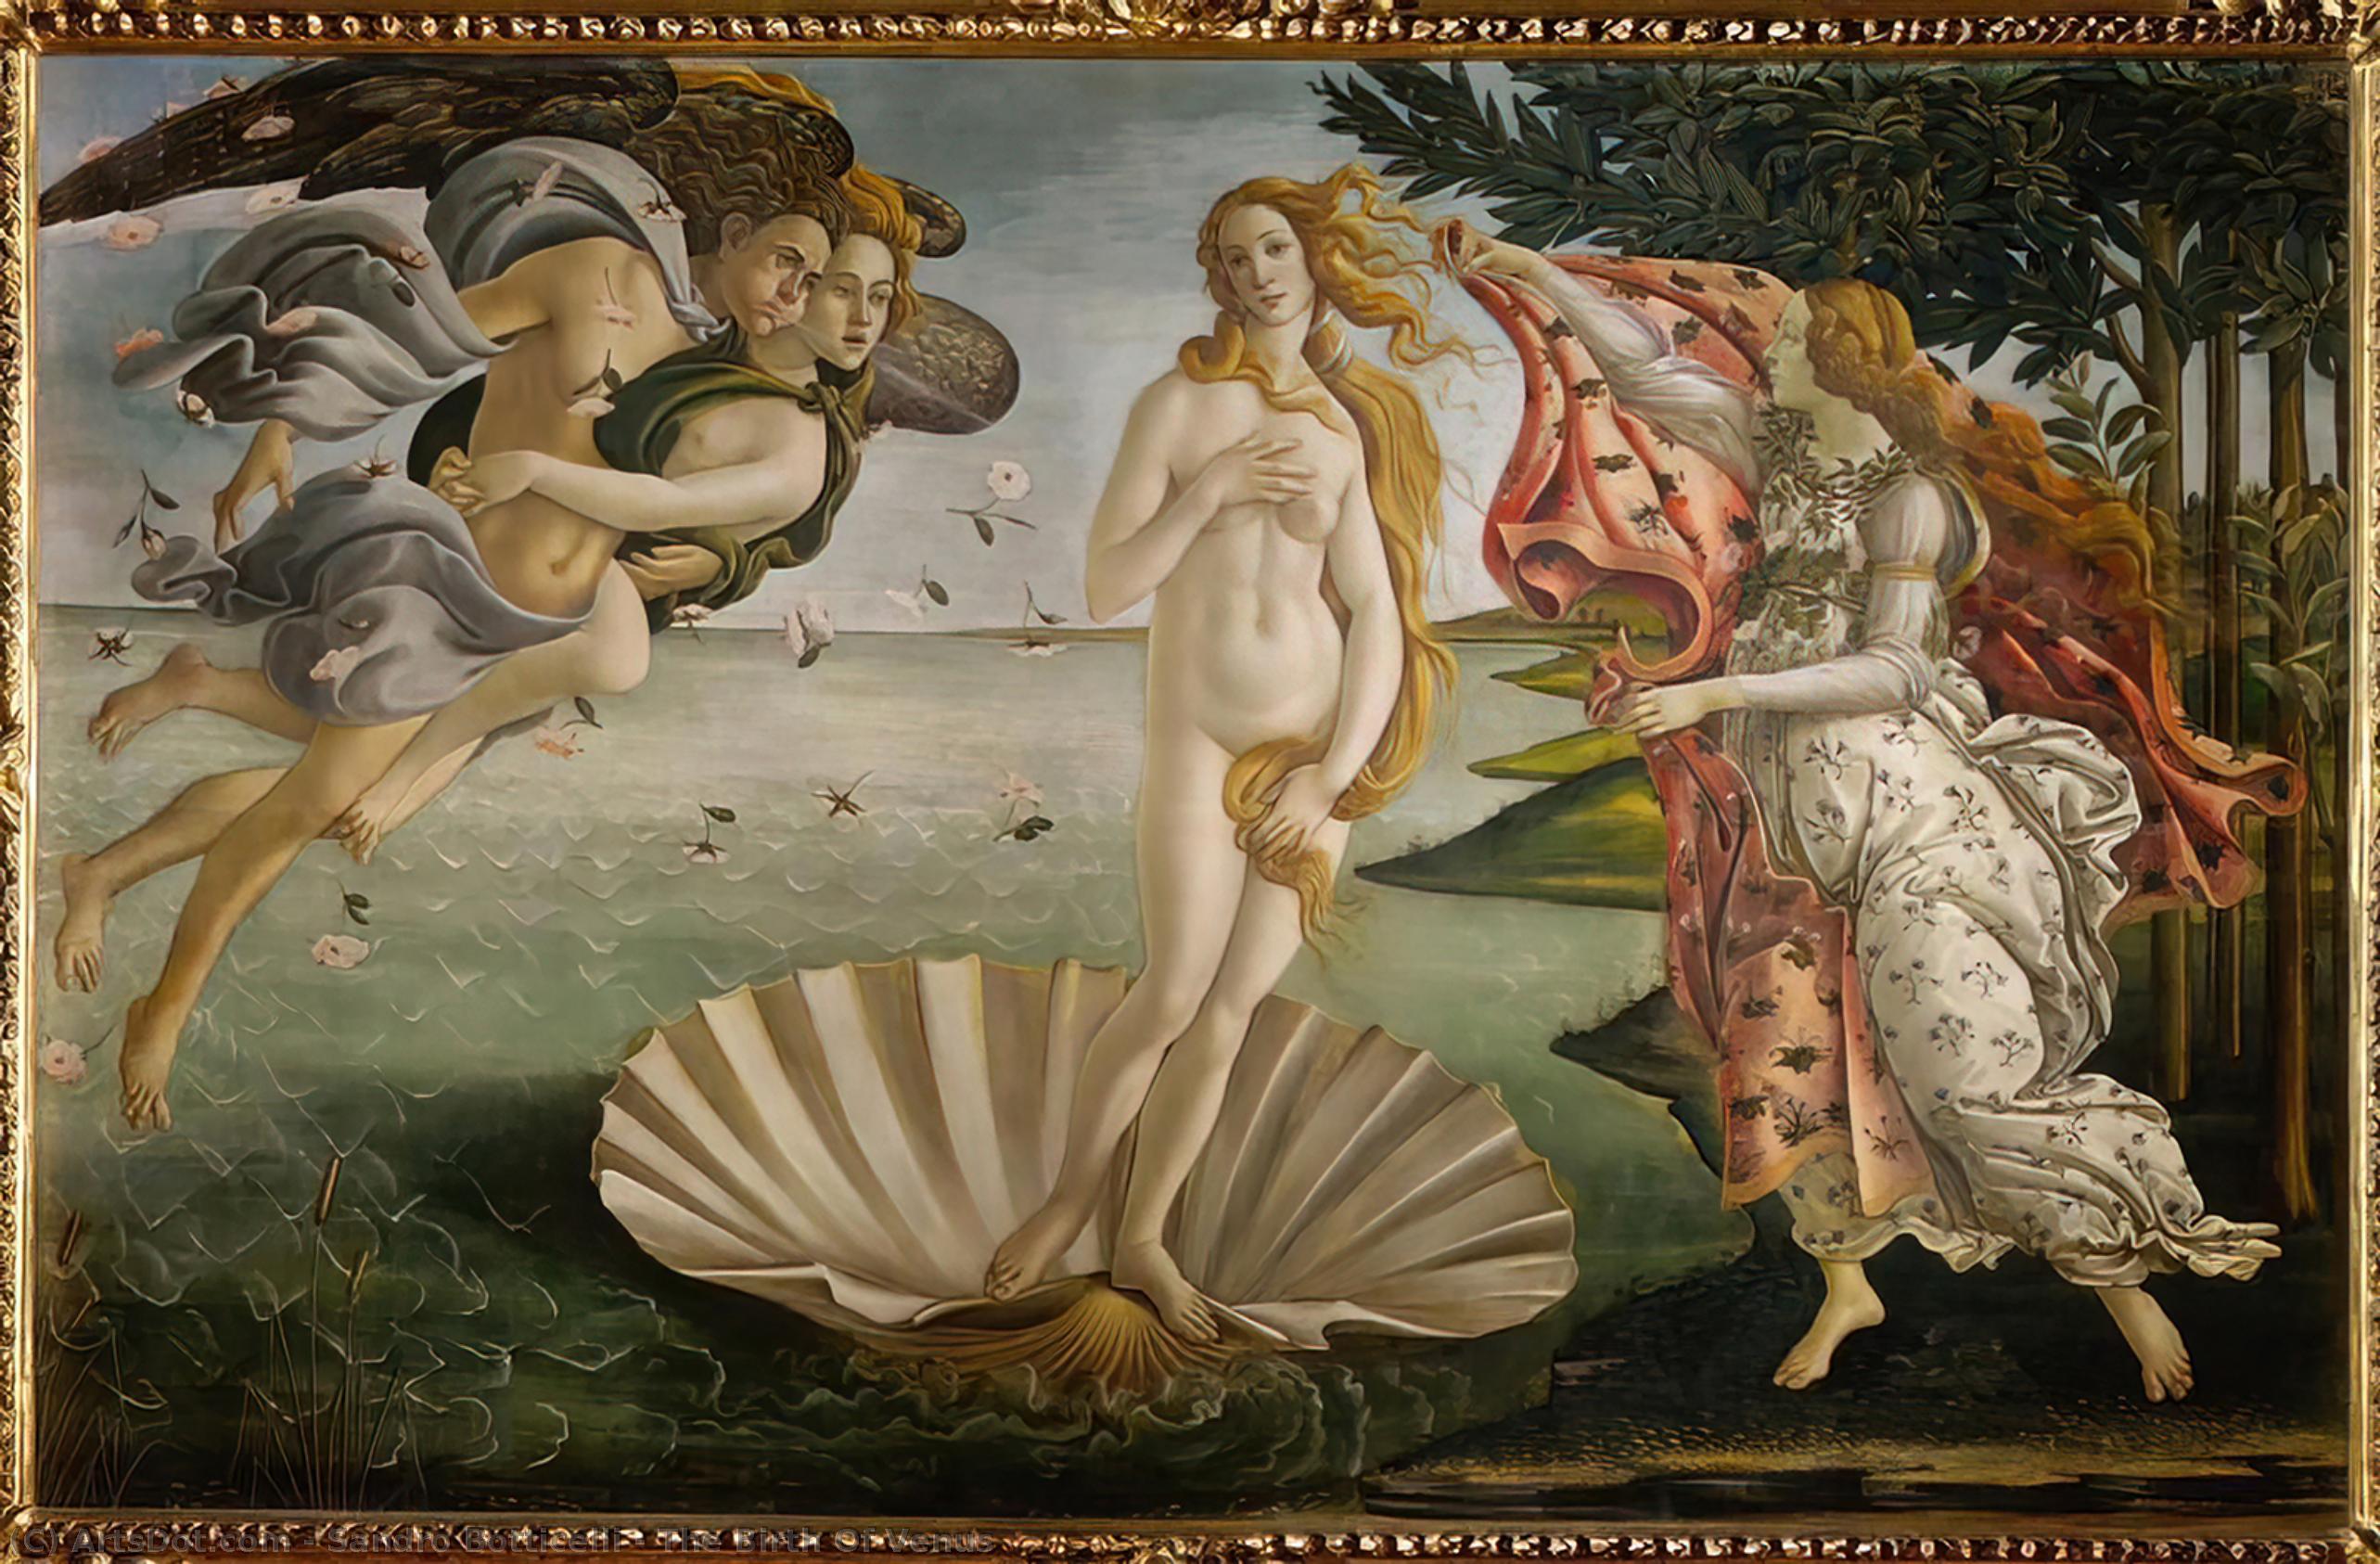 Achat Reproductions D'art La naissance de Vénus, 1485 de Sandro Botticelli (1445-1510, Italy) | ArtsDot.com